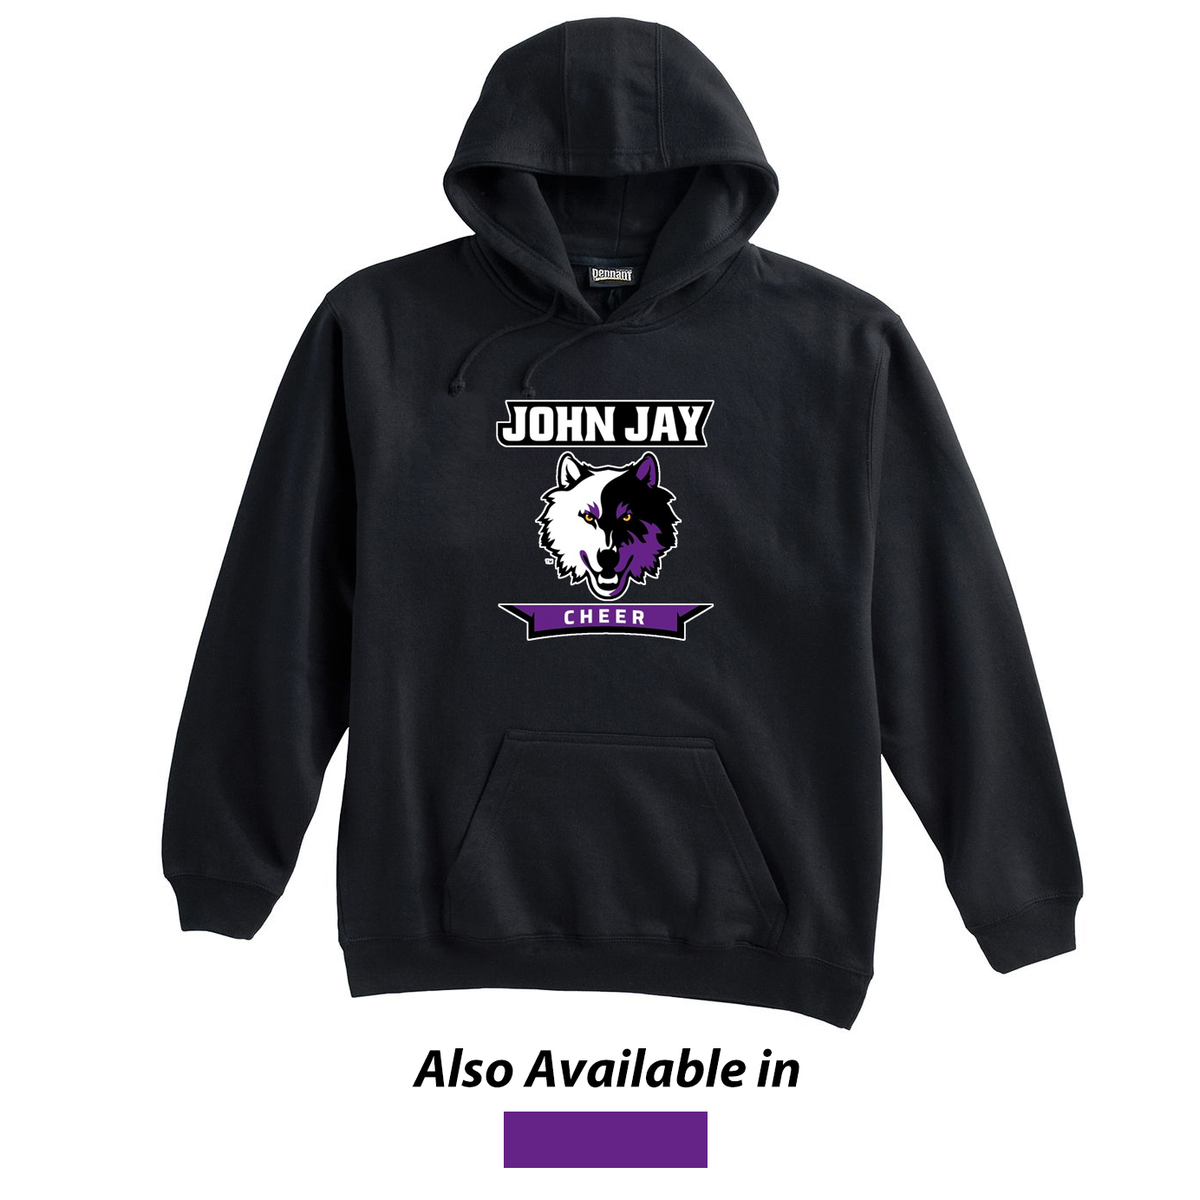 John Jay Youth Cheer Sweatshirt